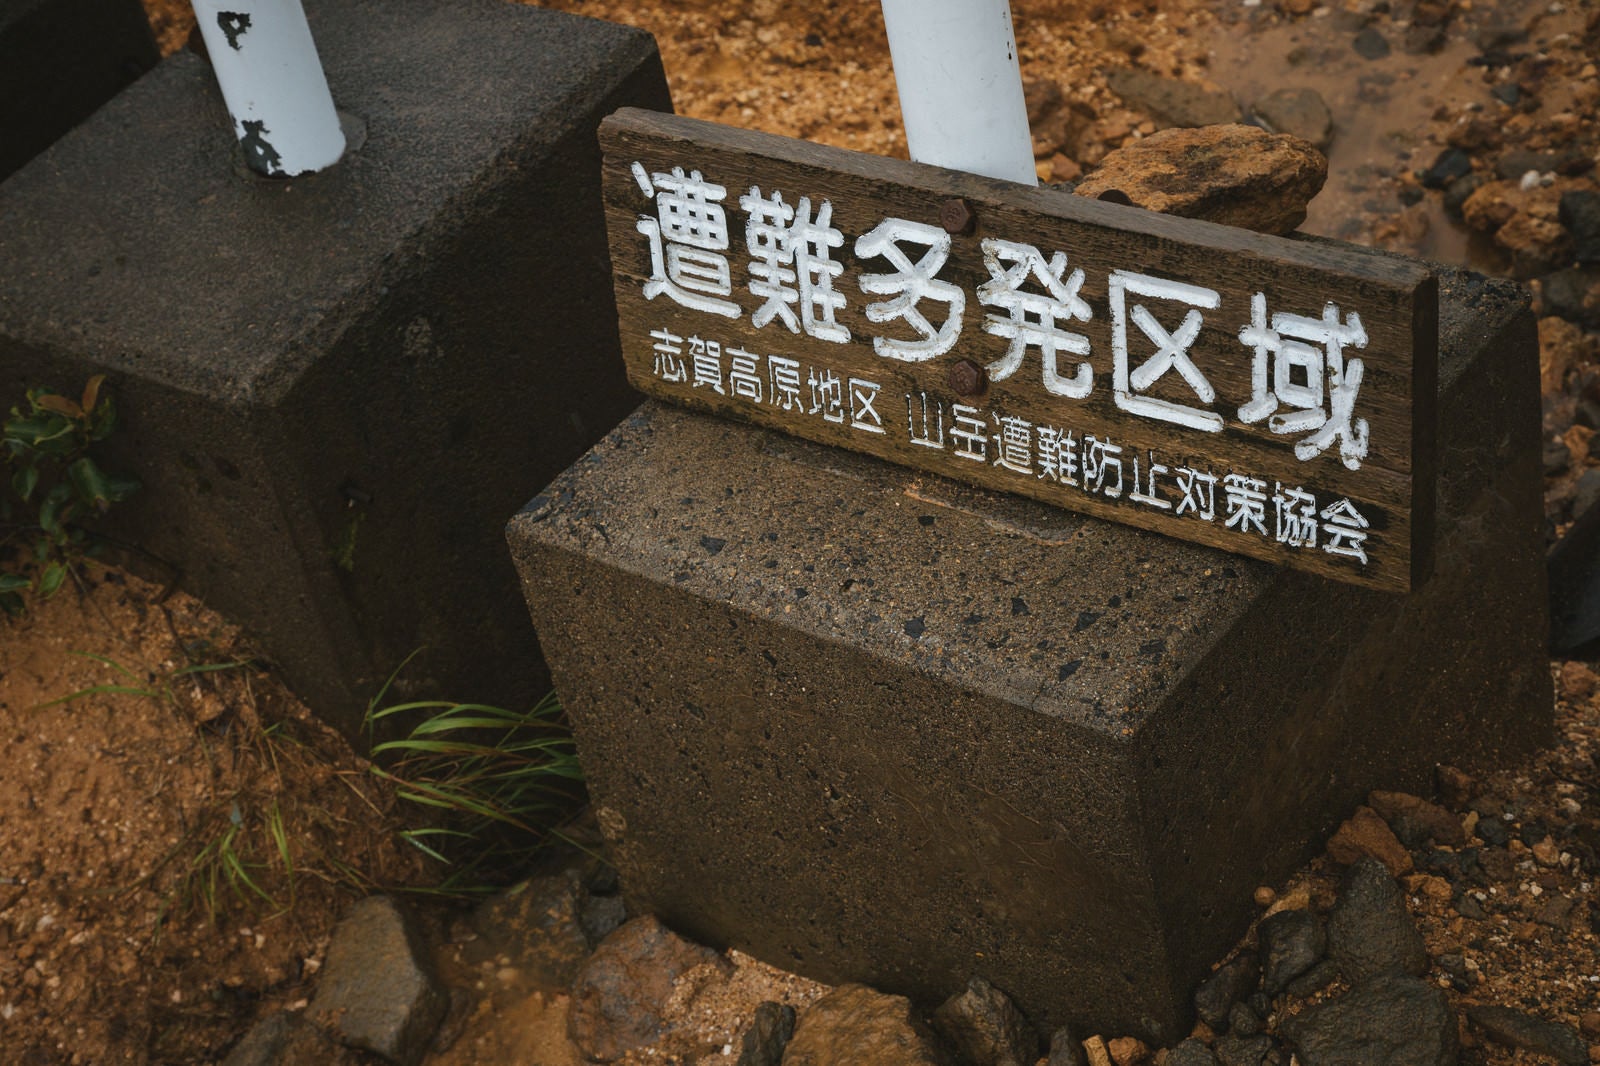 「小串鉱山入口に設置された「遭難多発区域」の看板」の写真